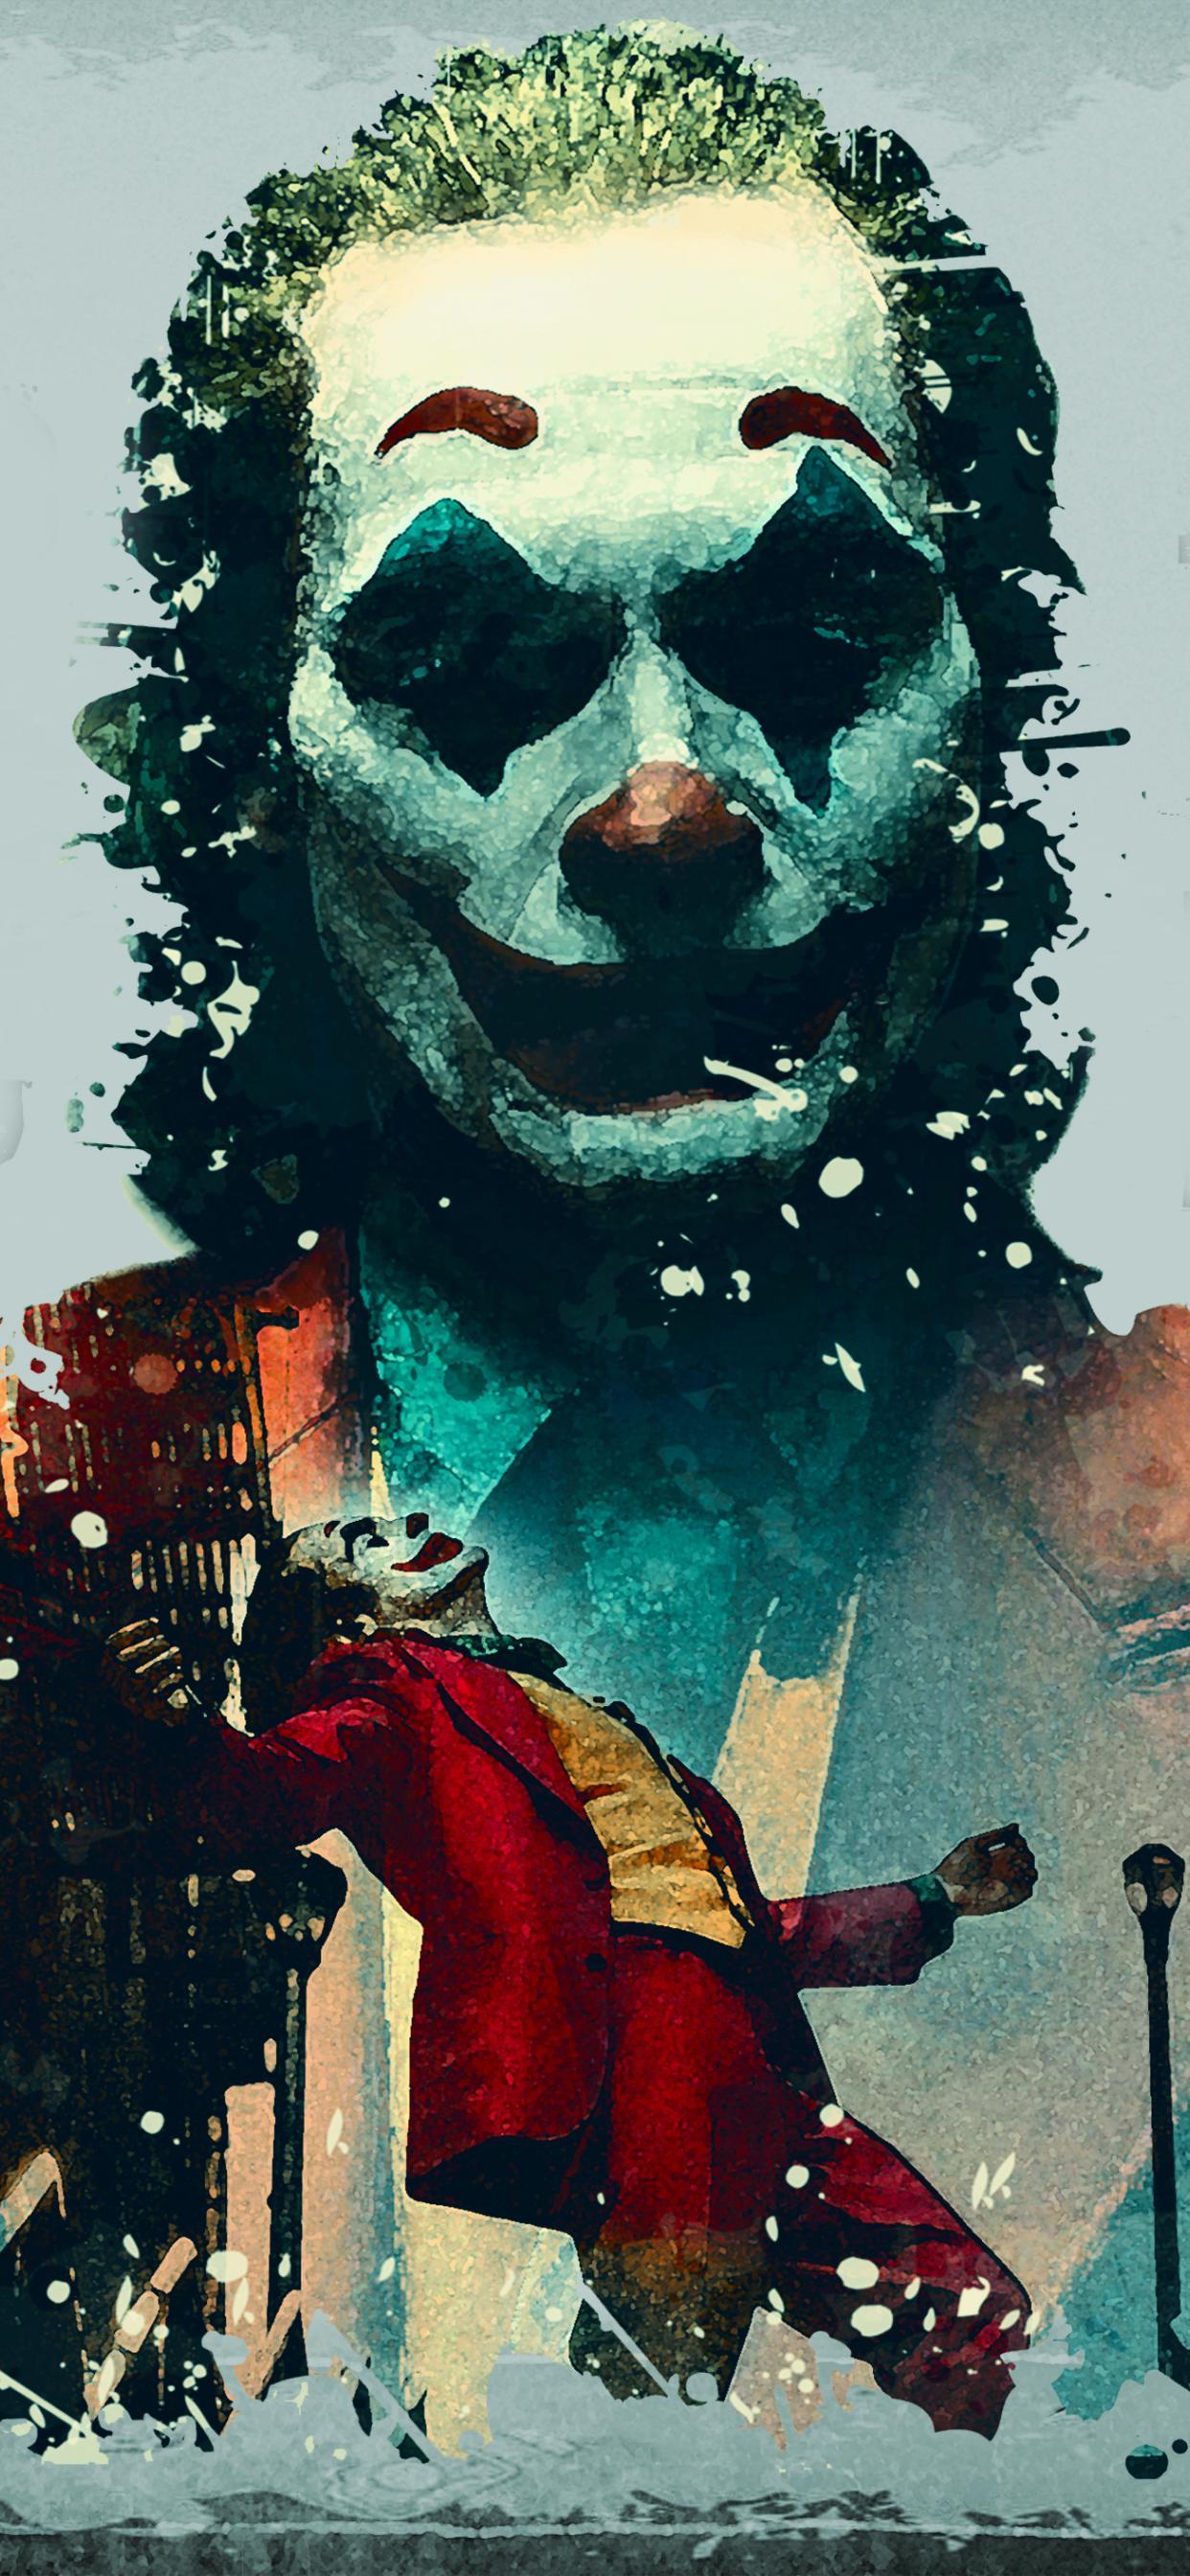 Joker 2019 Movie iPhone XS MAX Wallpaper, HD